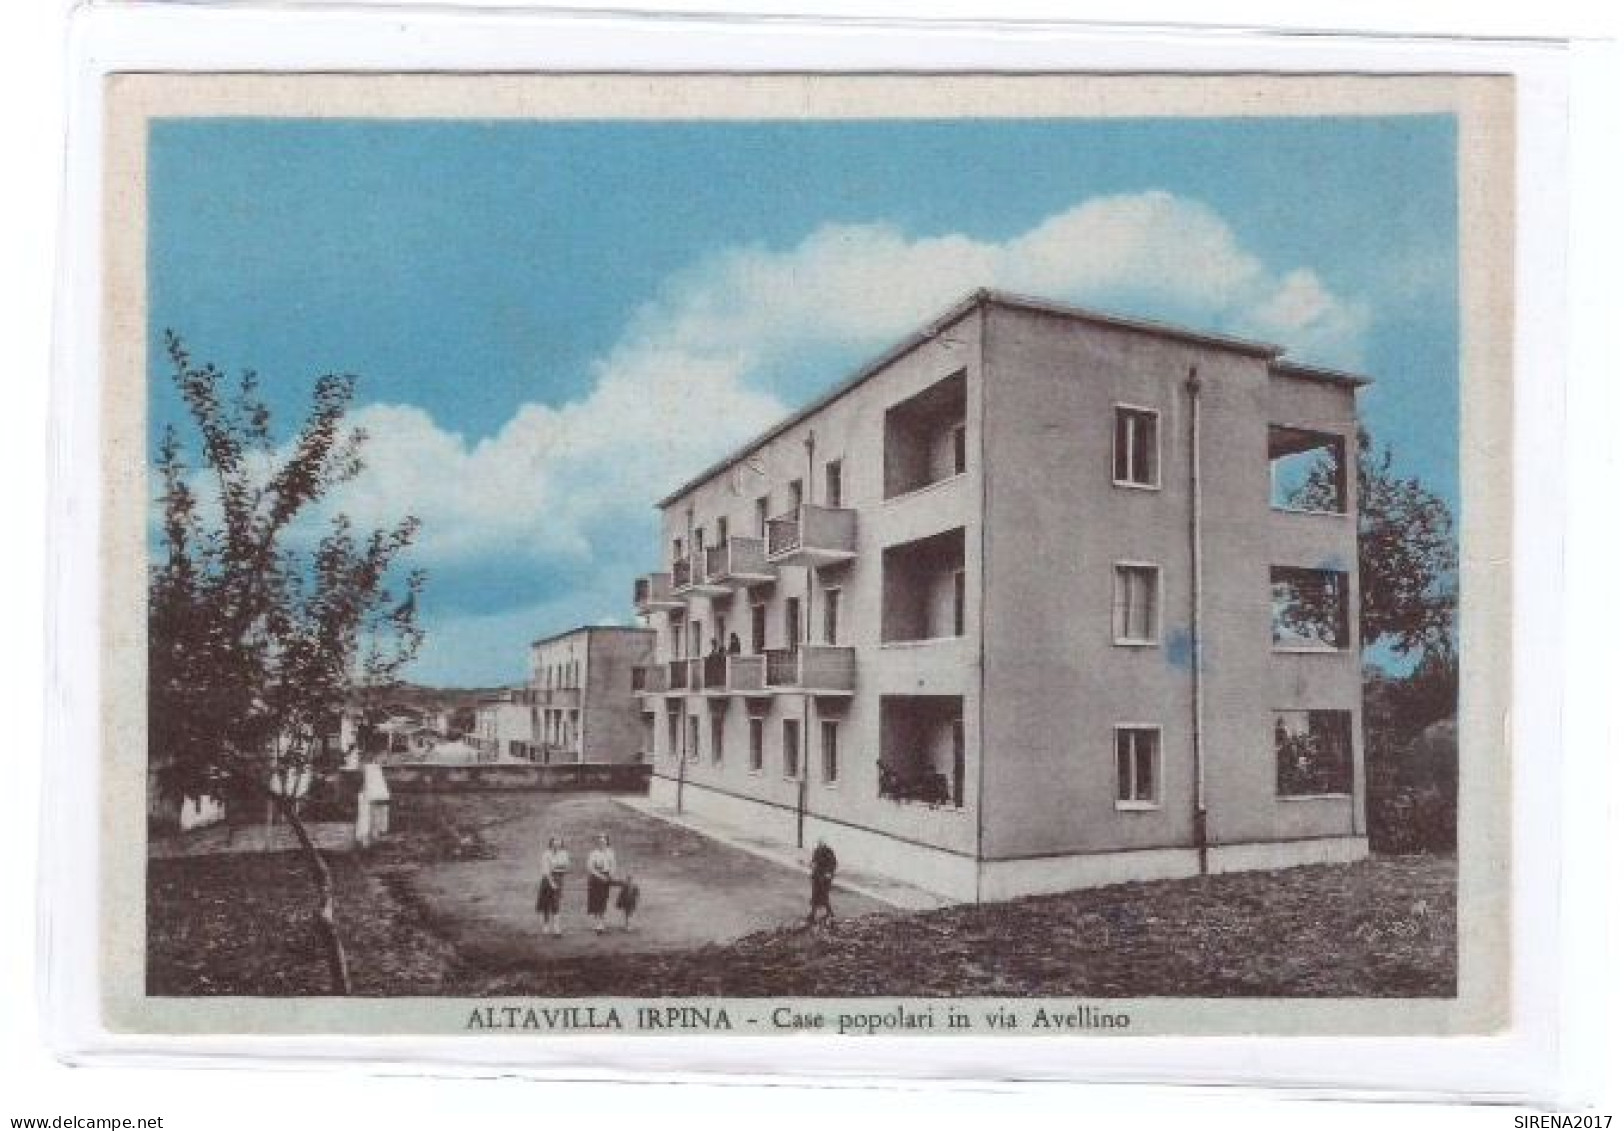 ALTAVILLA IRPINA - CASE POPOLARI IN VIA AVELLINO - AVELLINO  - VIAGGIATA - Avellino